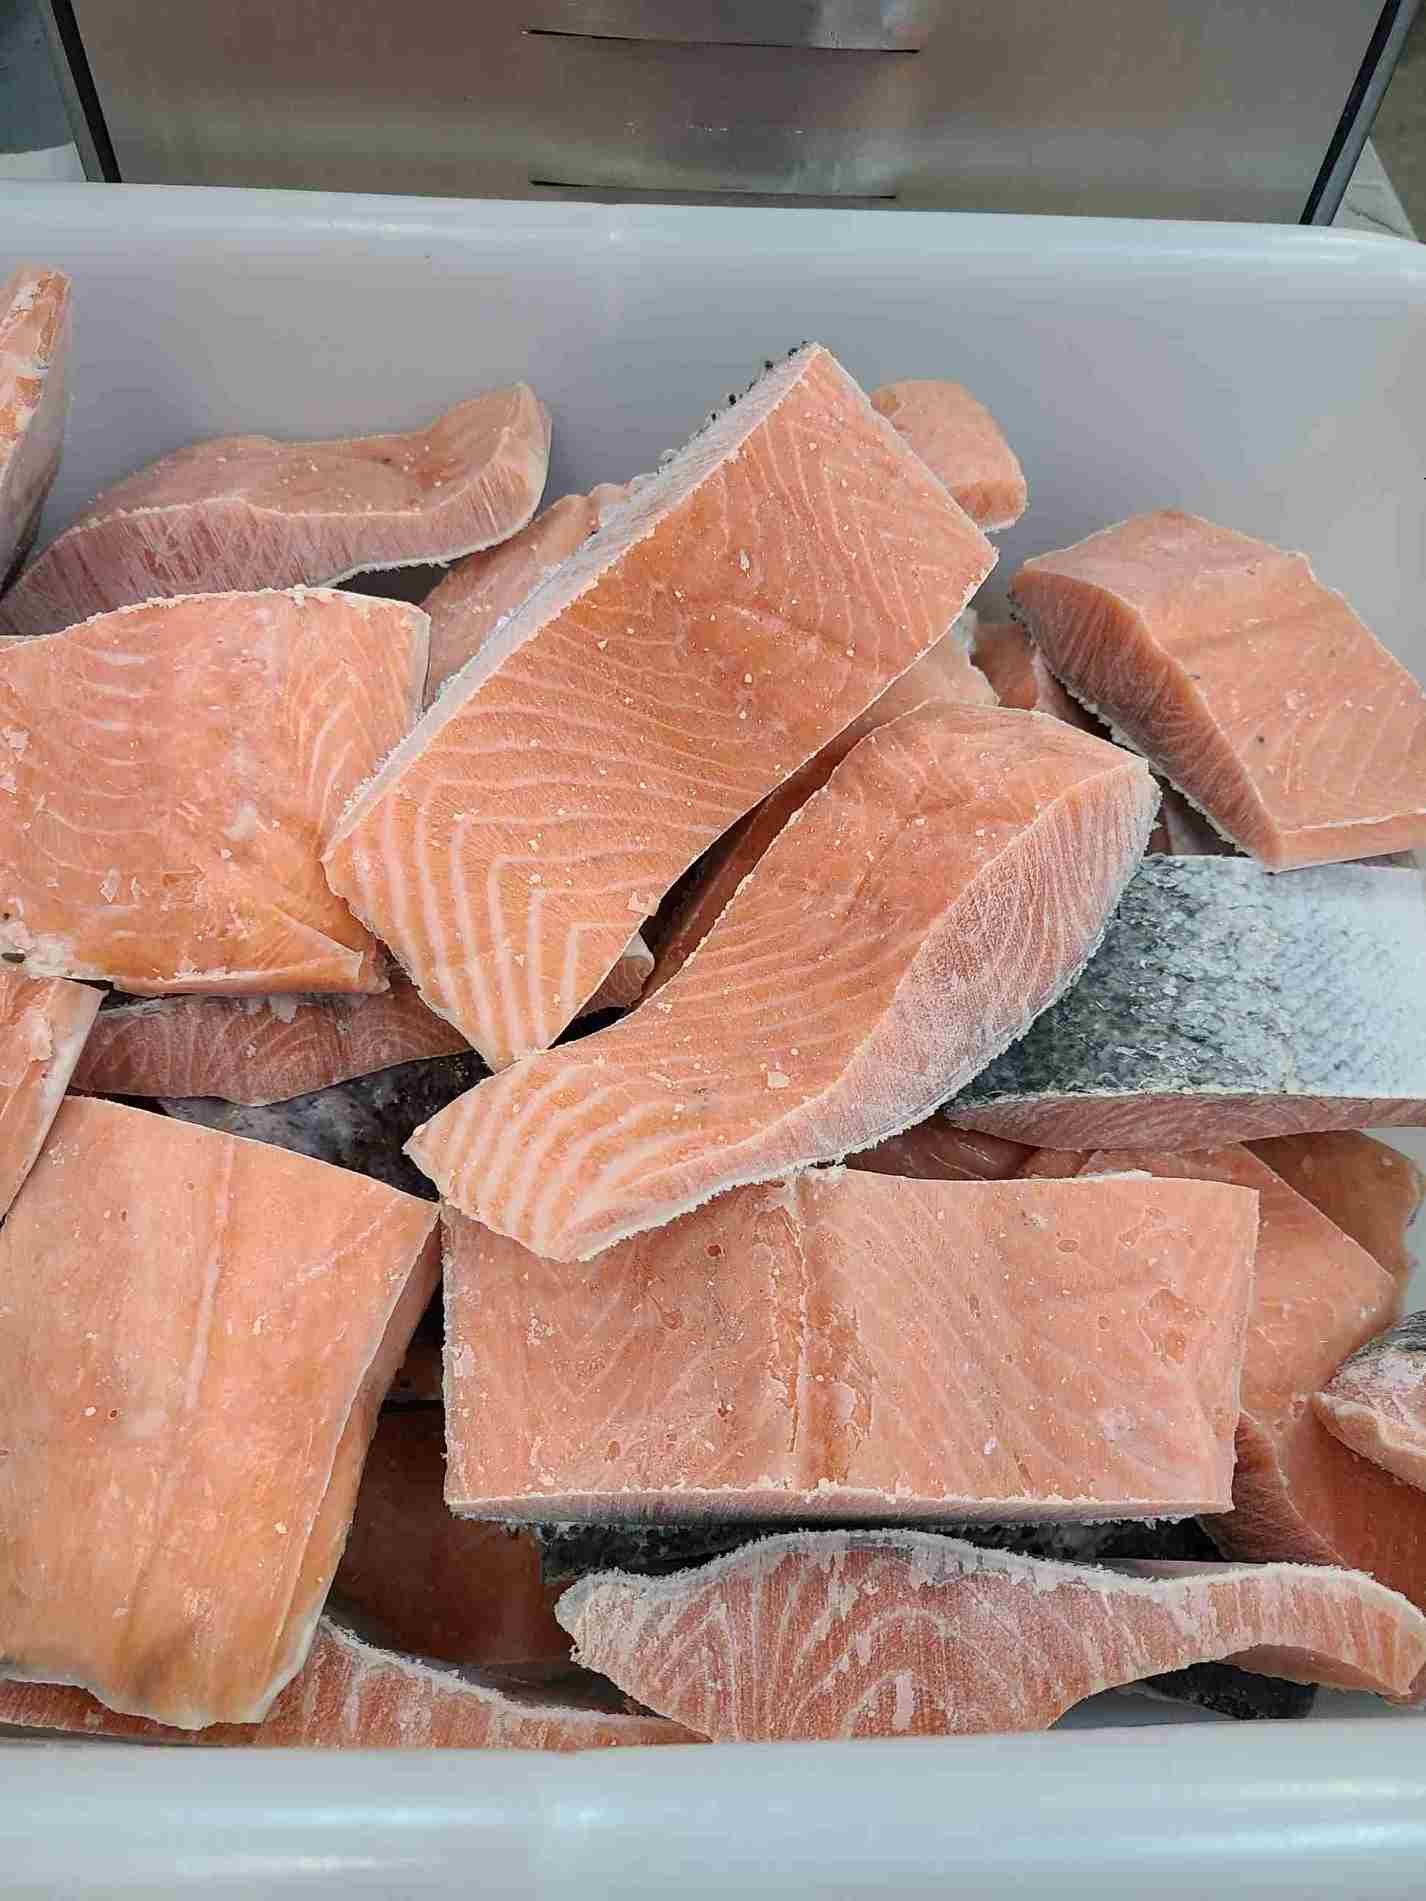 Portion saumon de l'atlantique / Portion Atlantic Salmon - 454g